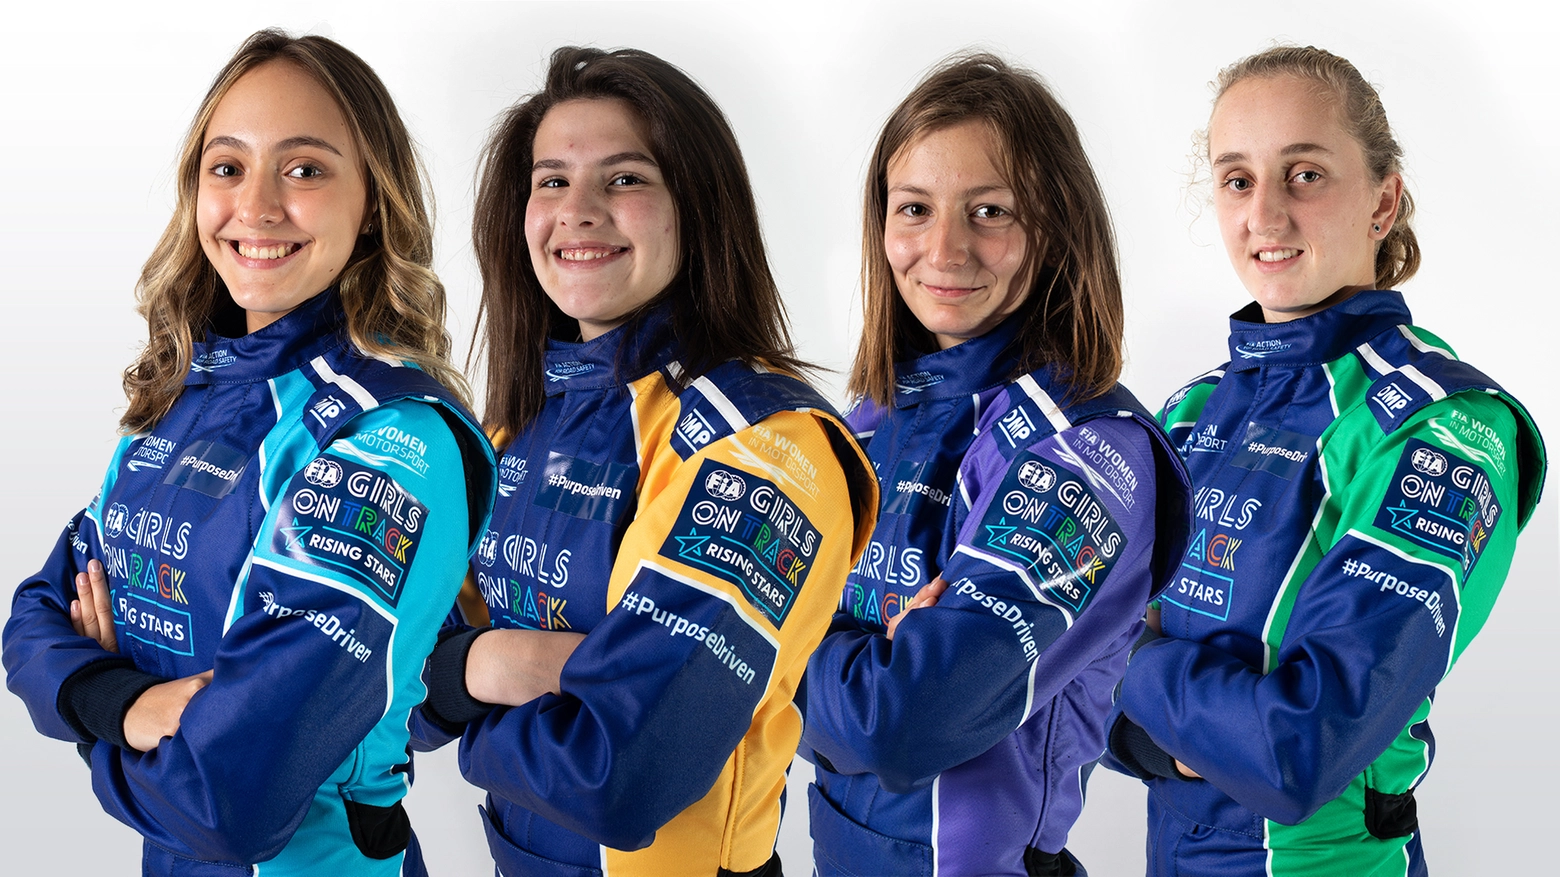 Le protagoniste del programma Fia Girls on Track-Rising Stars di Ferrari (Dire)